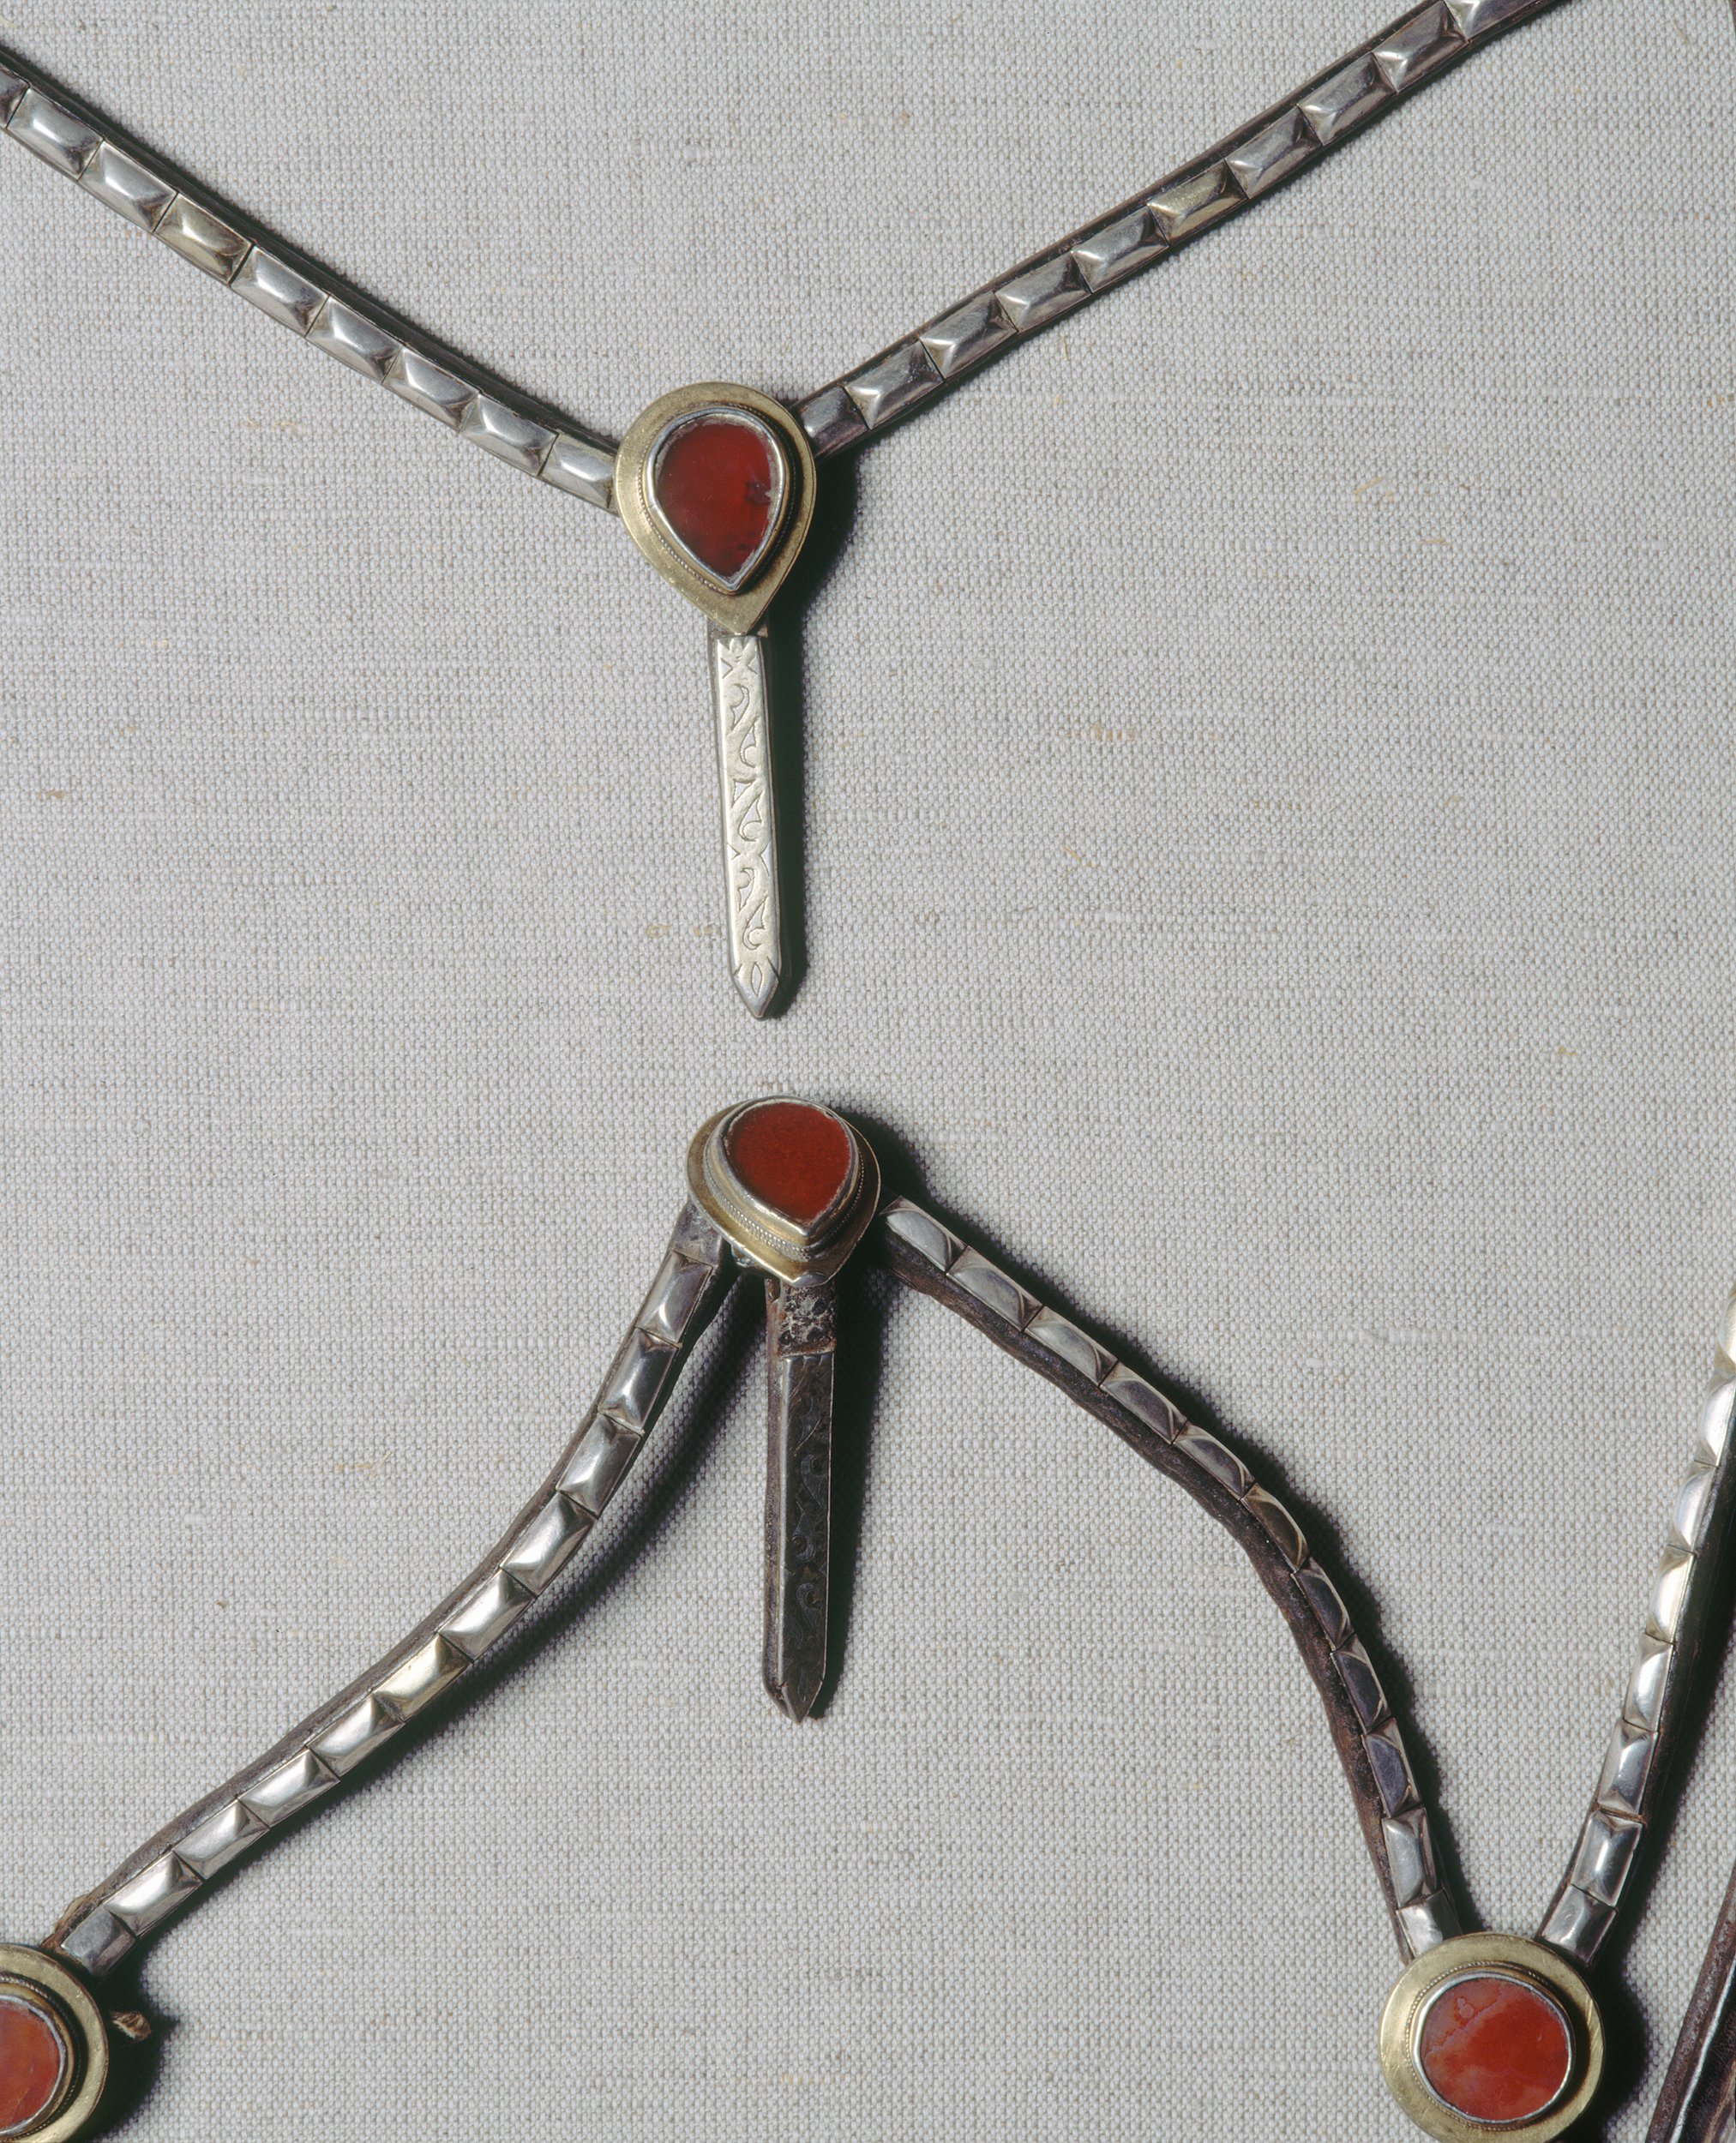 Tekke Turkmen horse jewellery